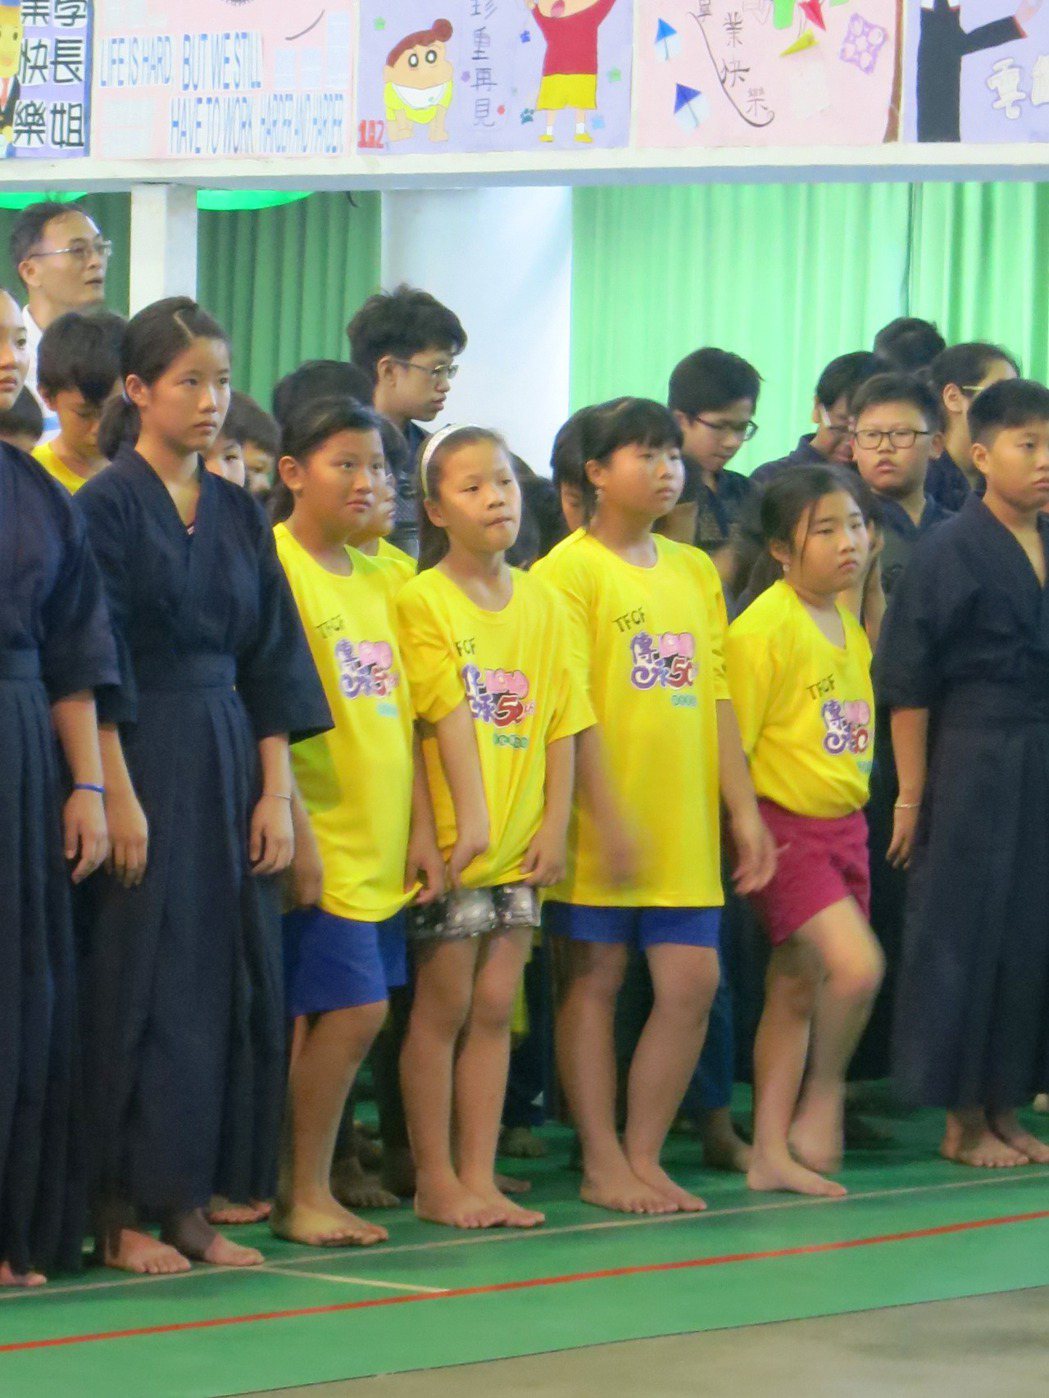 彰化家扶劍道班第一次參加正式比賽，卻因沒有劍道服，穿著鮮黃T恤參賽，在隊伍中特別...